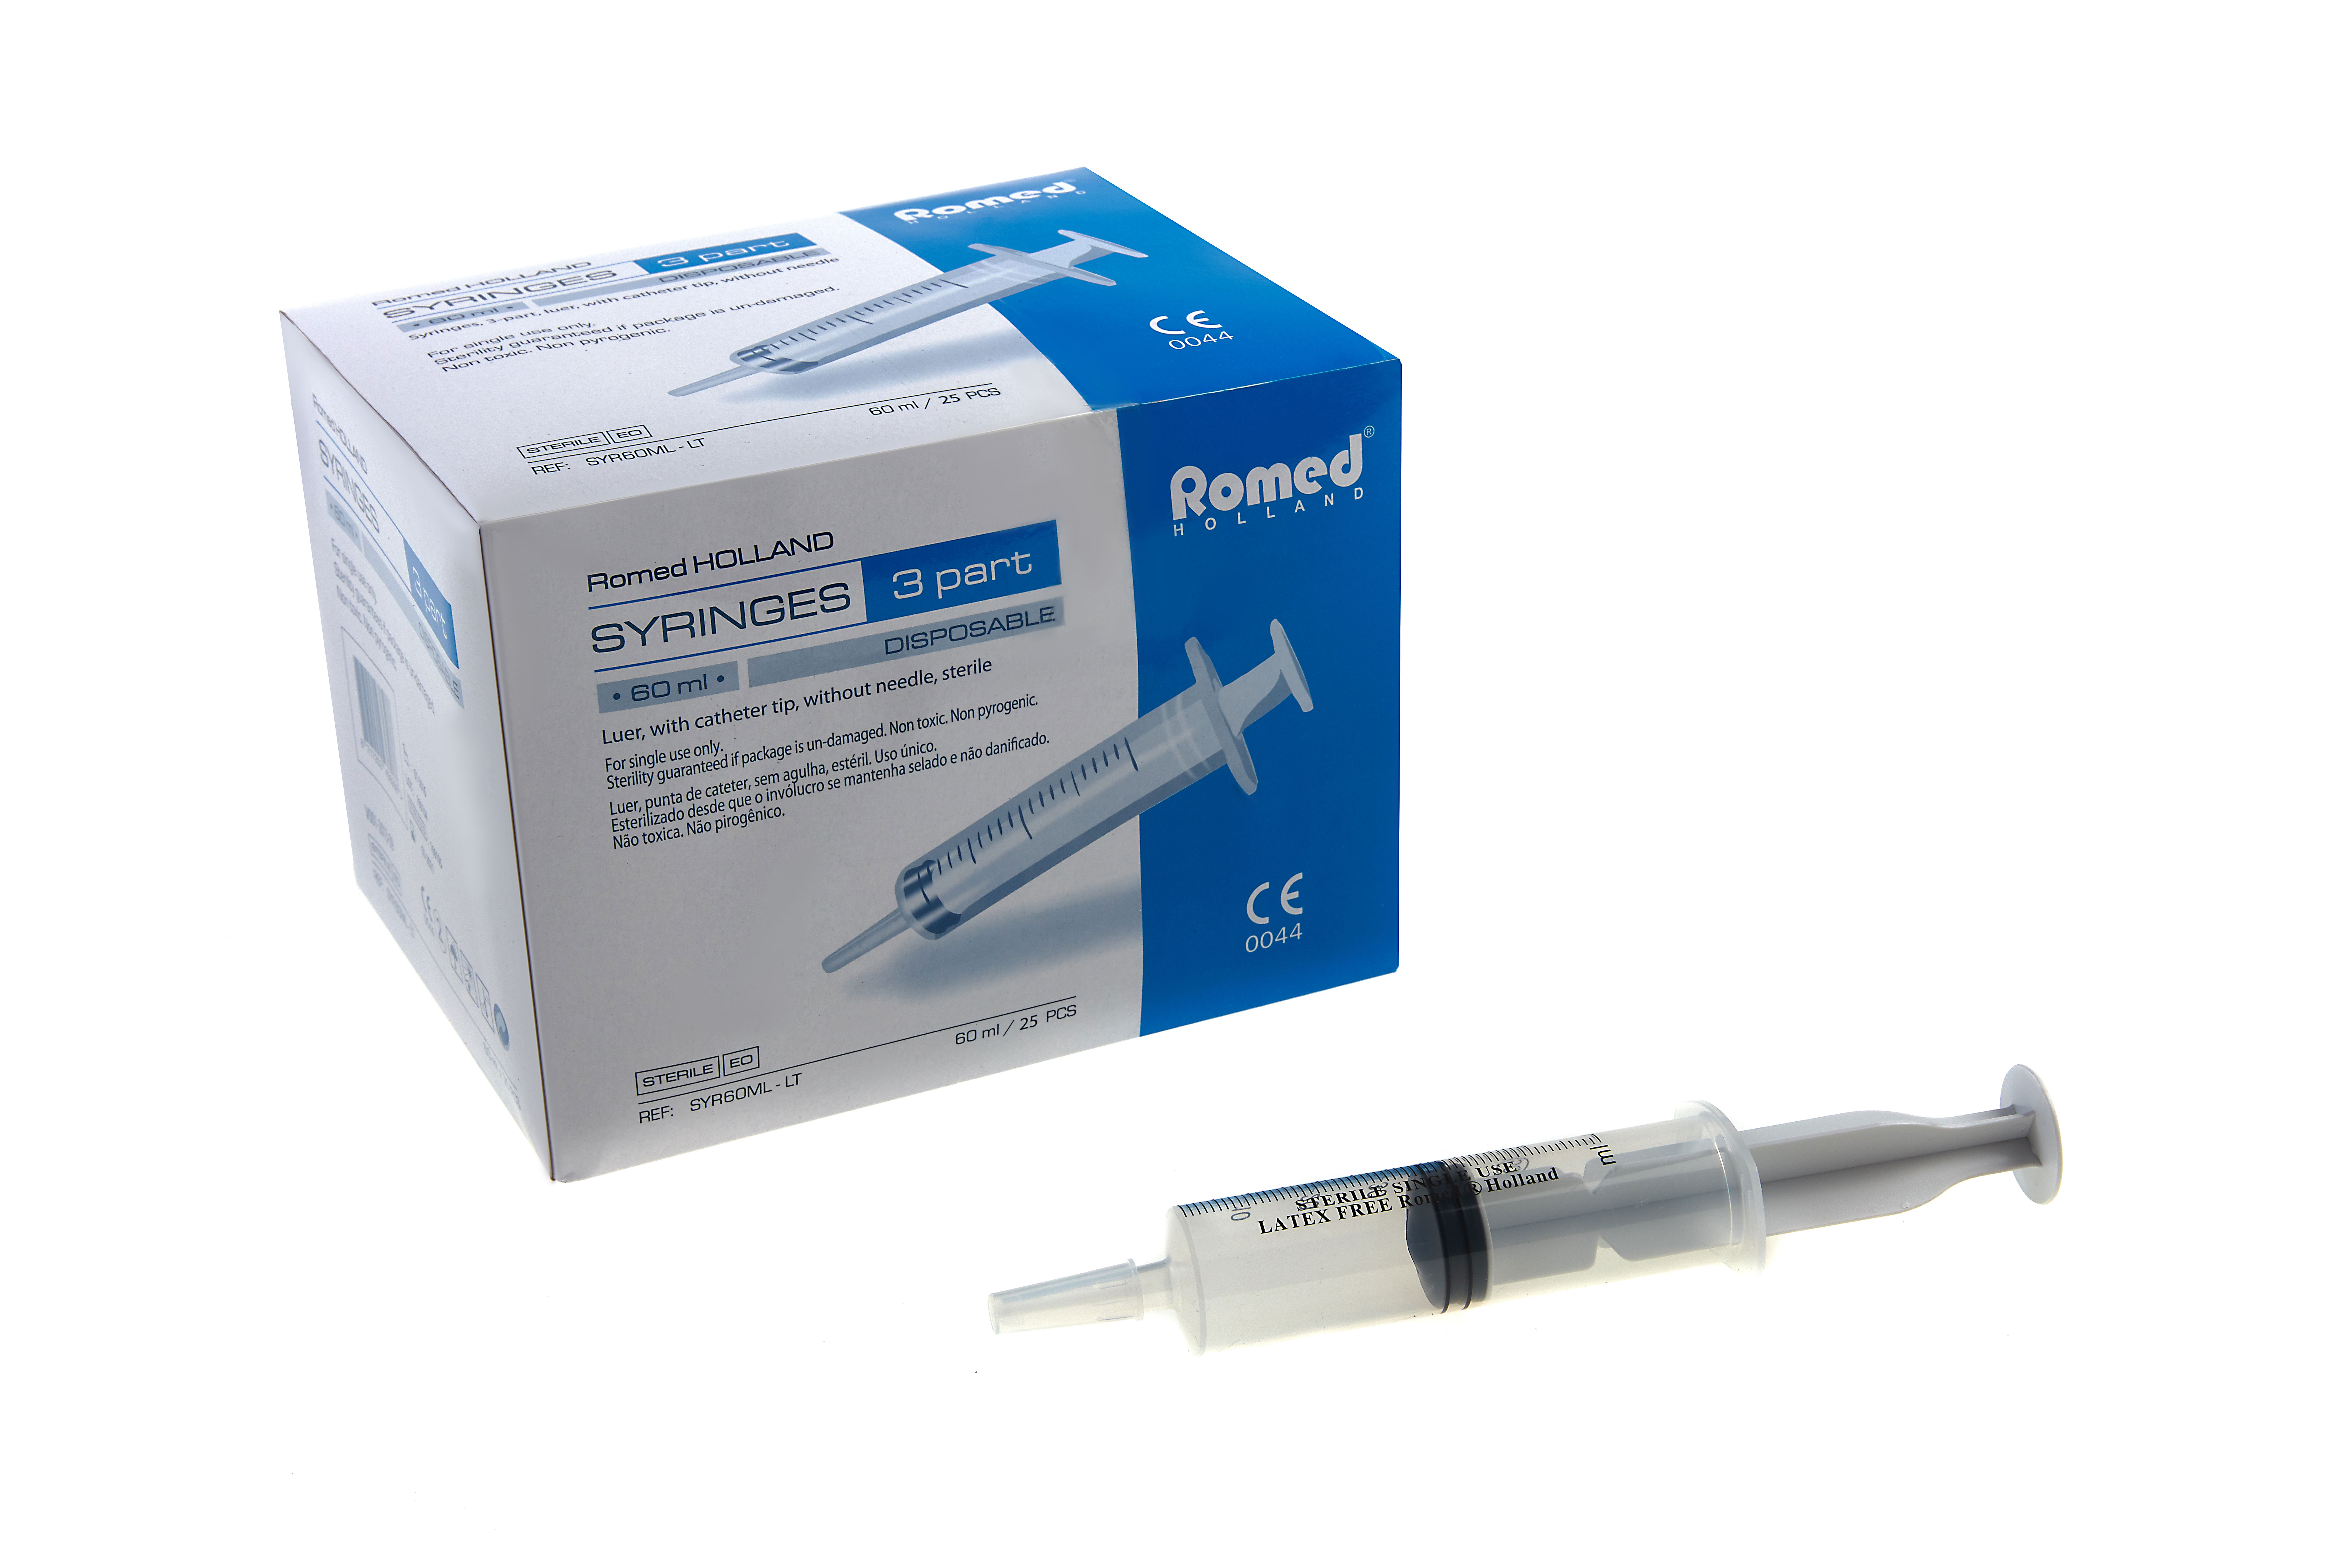 3-part syringes 60ml, catheter tip